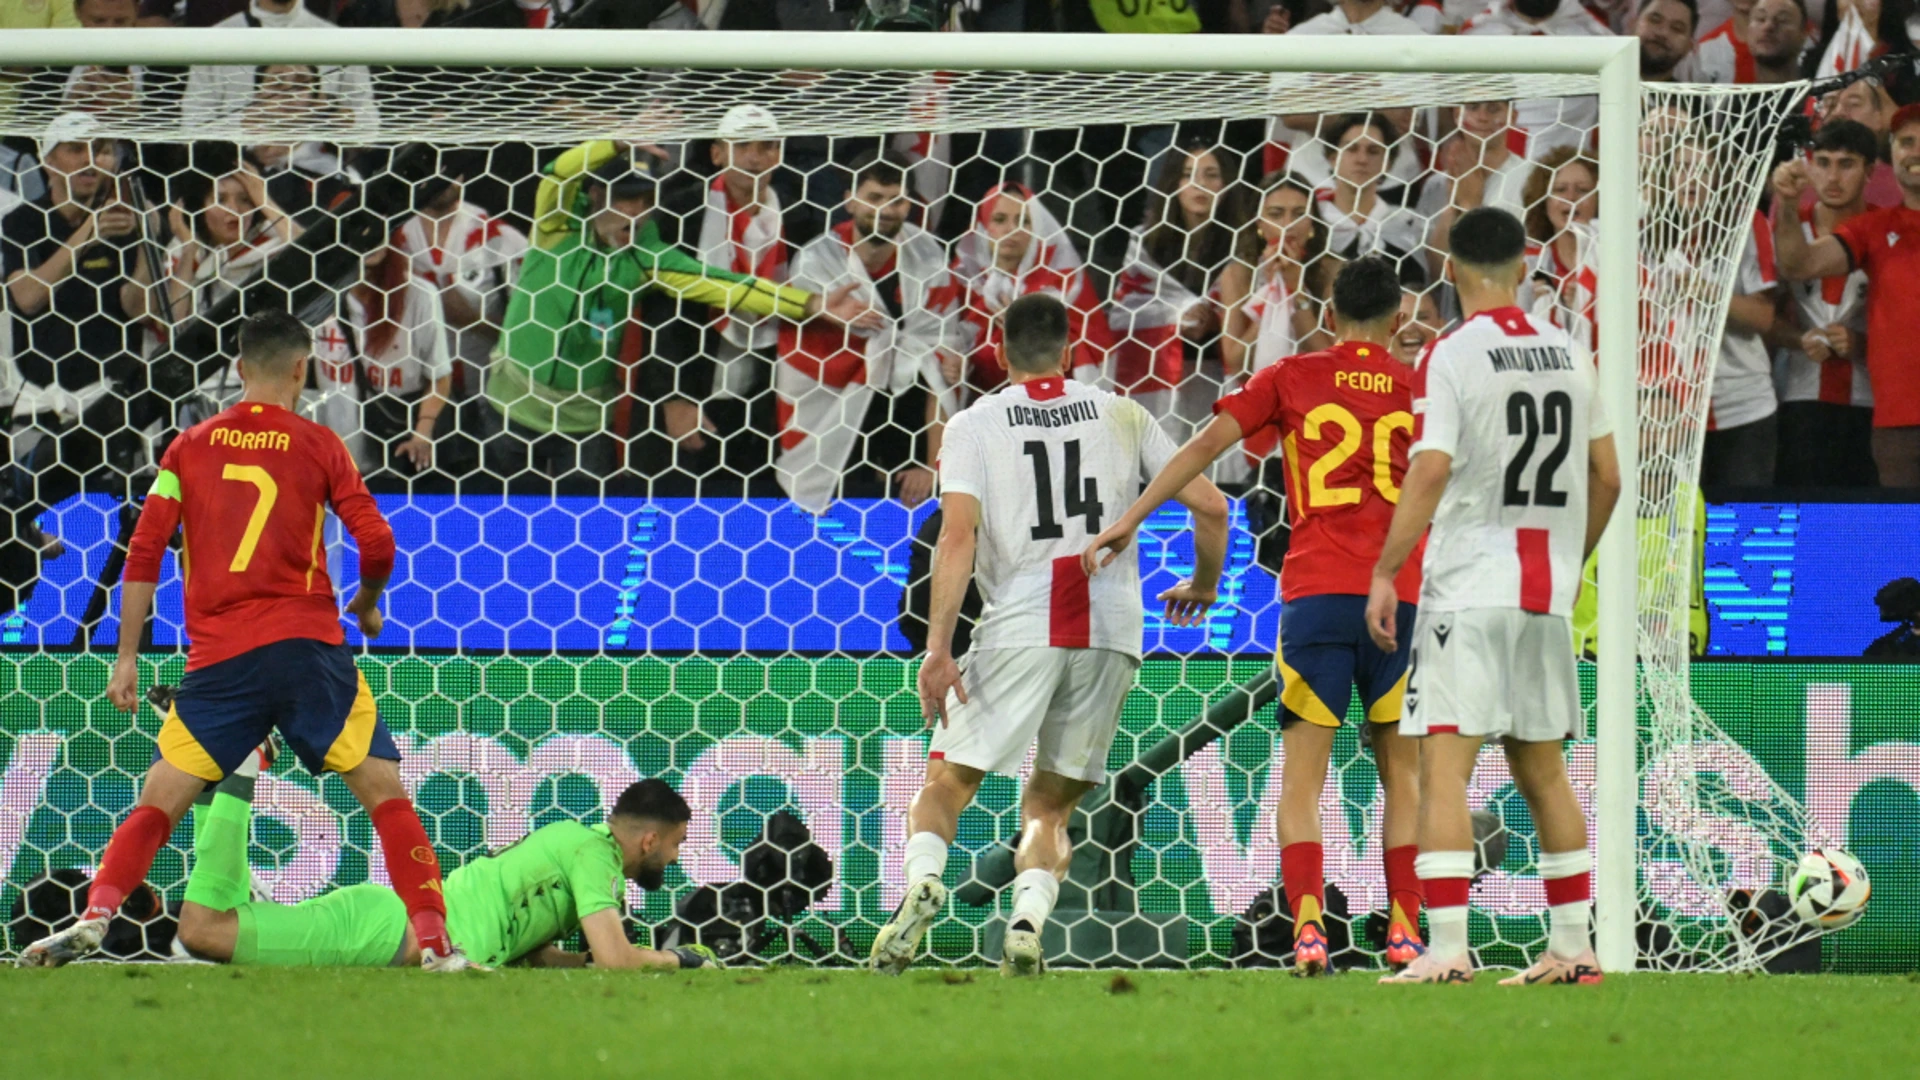 Spain's 35 shots underline attacking credentials